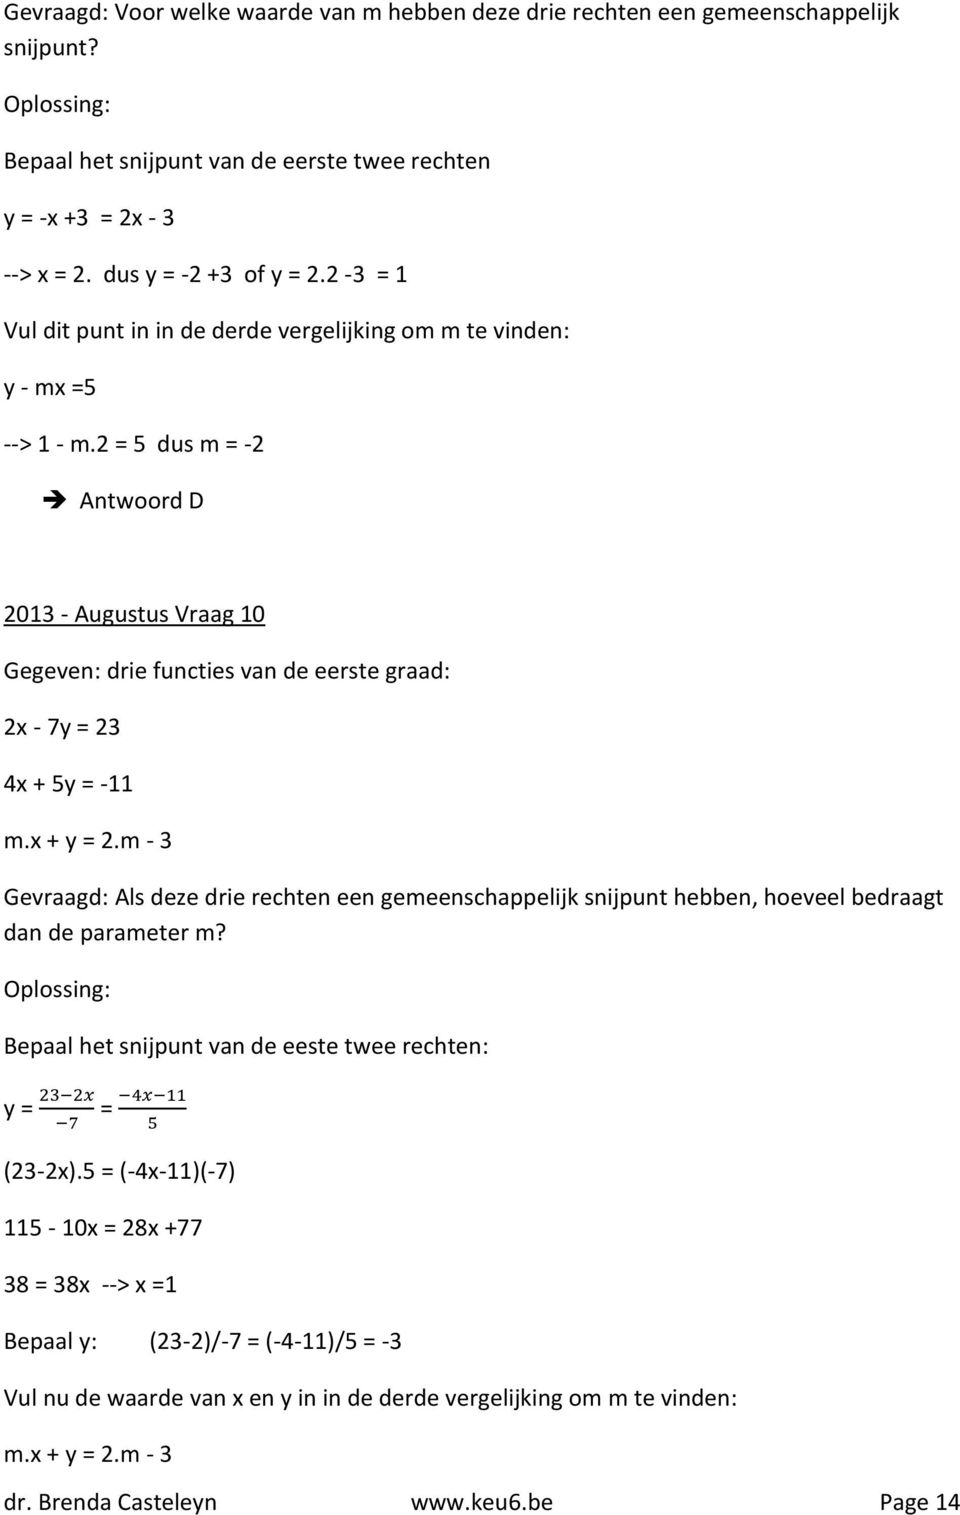 2 = 5 dus m = -2 Antwoord D 2013 - Augustus Vraag 10 Gegeven: drie functies van de eerste graad: 2x - 7y = 23 4x + 5y = -11 m.x + y = 2.